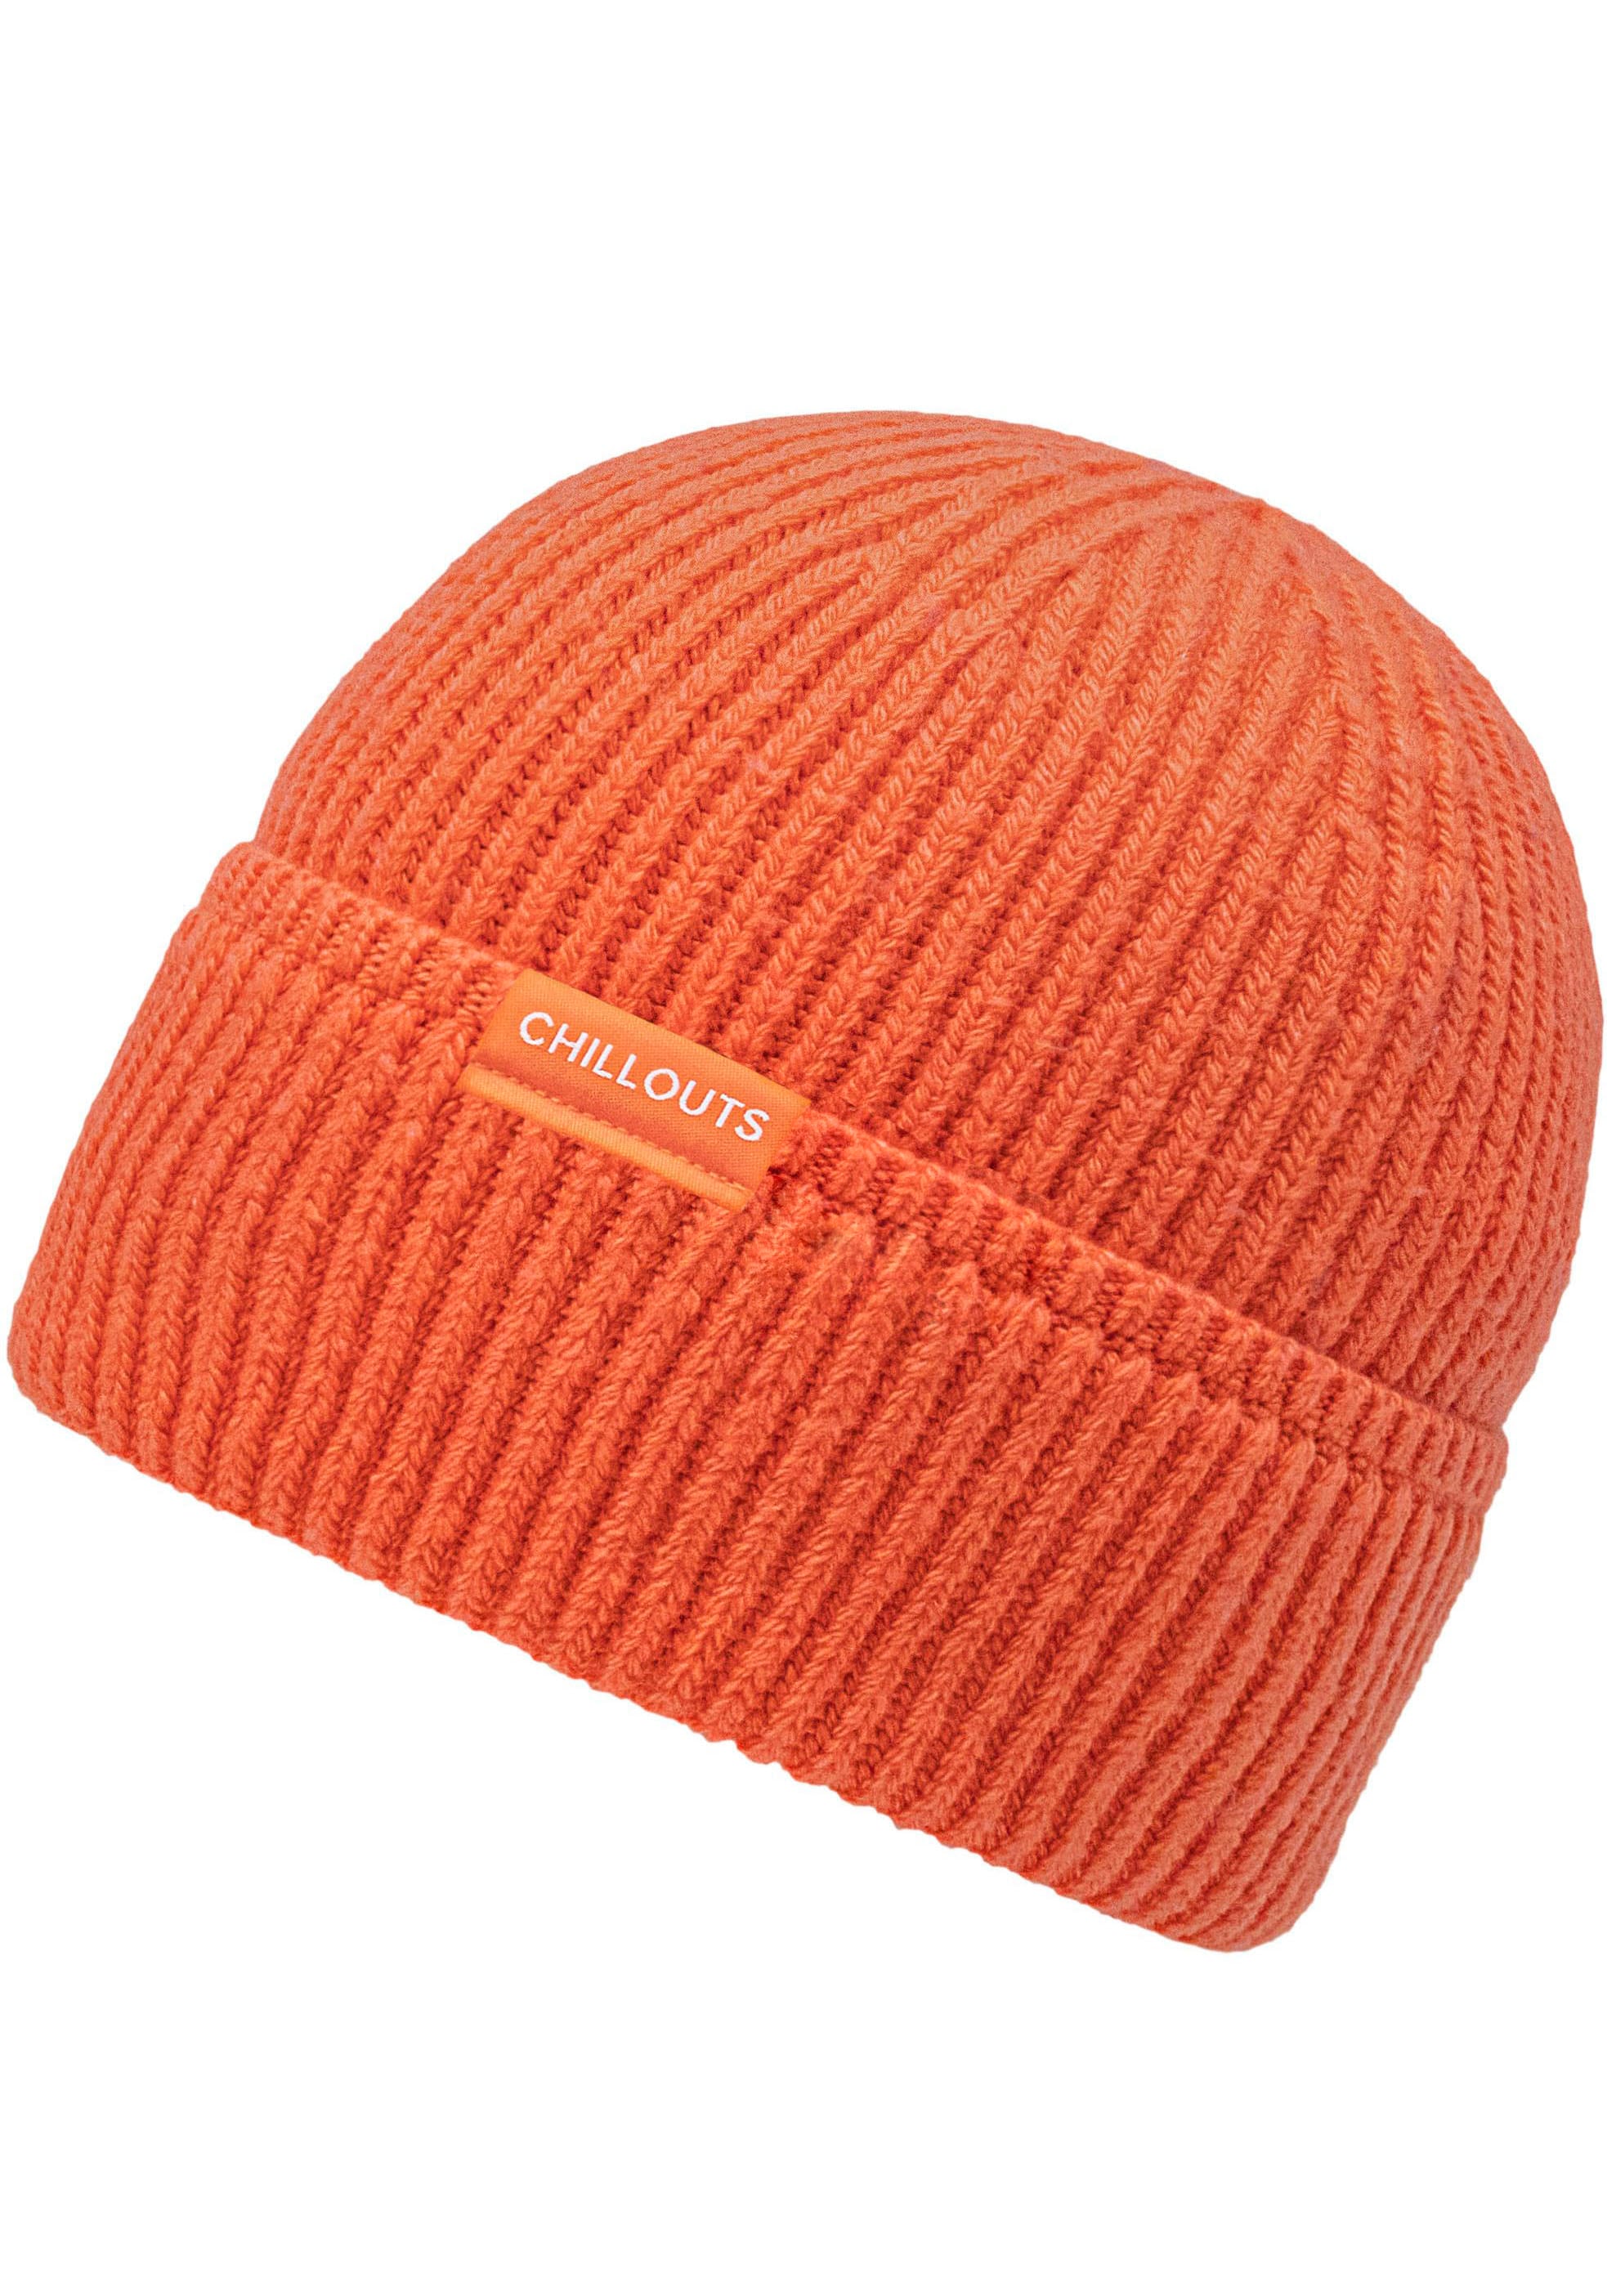 chillouts Strickmütze »Matty Hat«, Mit UNIVERSAL | Baumwoll-Anteil hohem kaufen